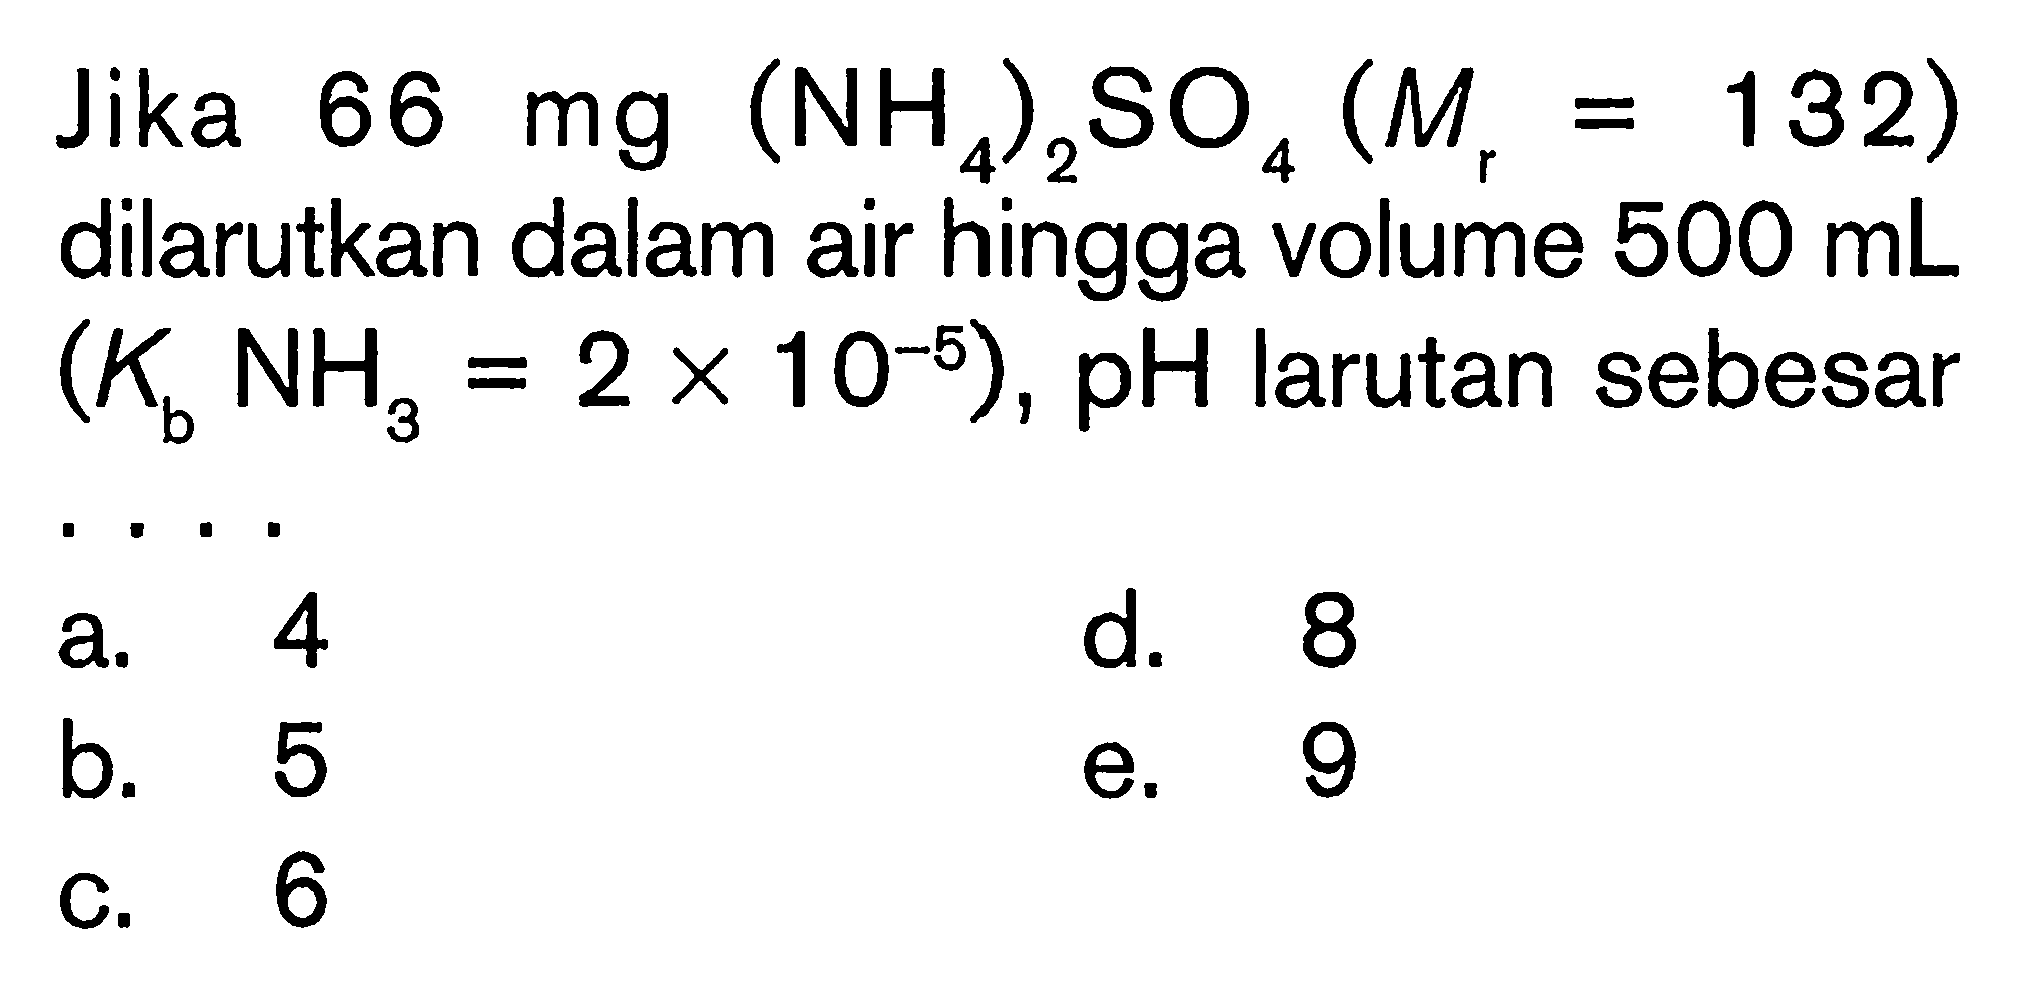 Jika  66 mg(NH4)2 SO4(Mr=132)  dilarutkan dalam air hingga volume  500 mL   (Kb NH3=2x 10^-5), pH  larutan sebesara. 4d. 8b. 5e. 9C. 6